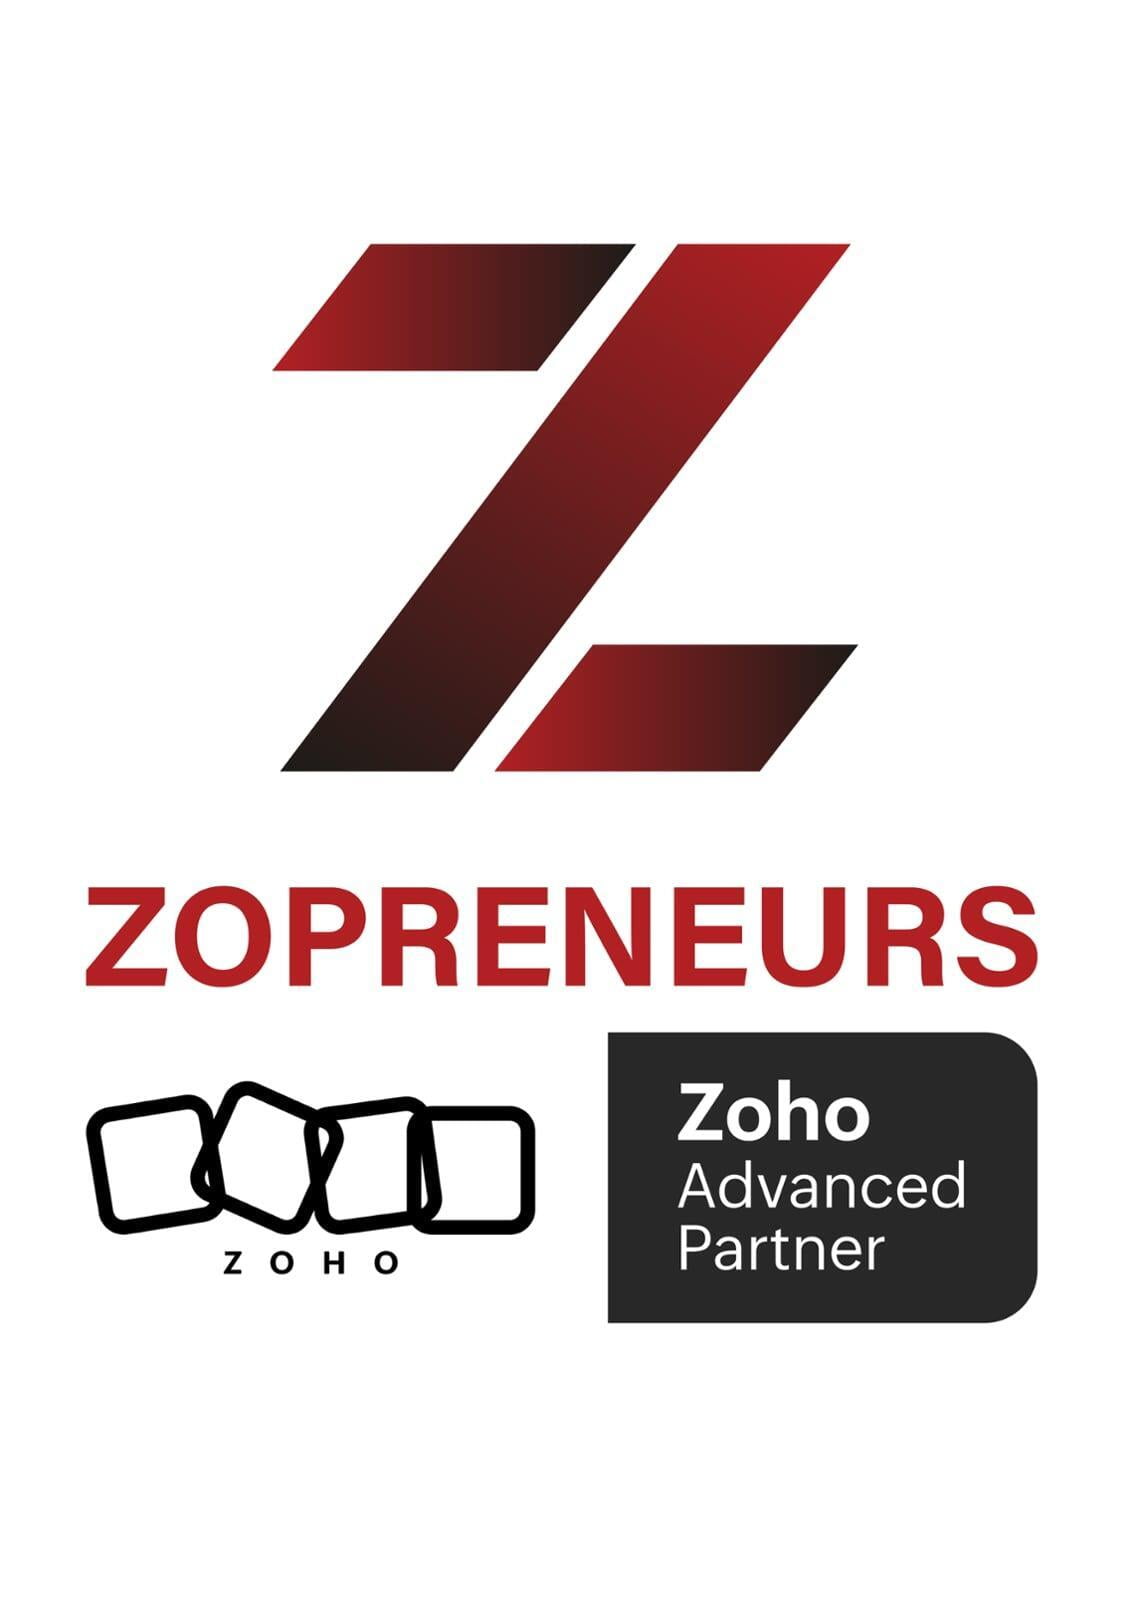 www.zopreneurs.com